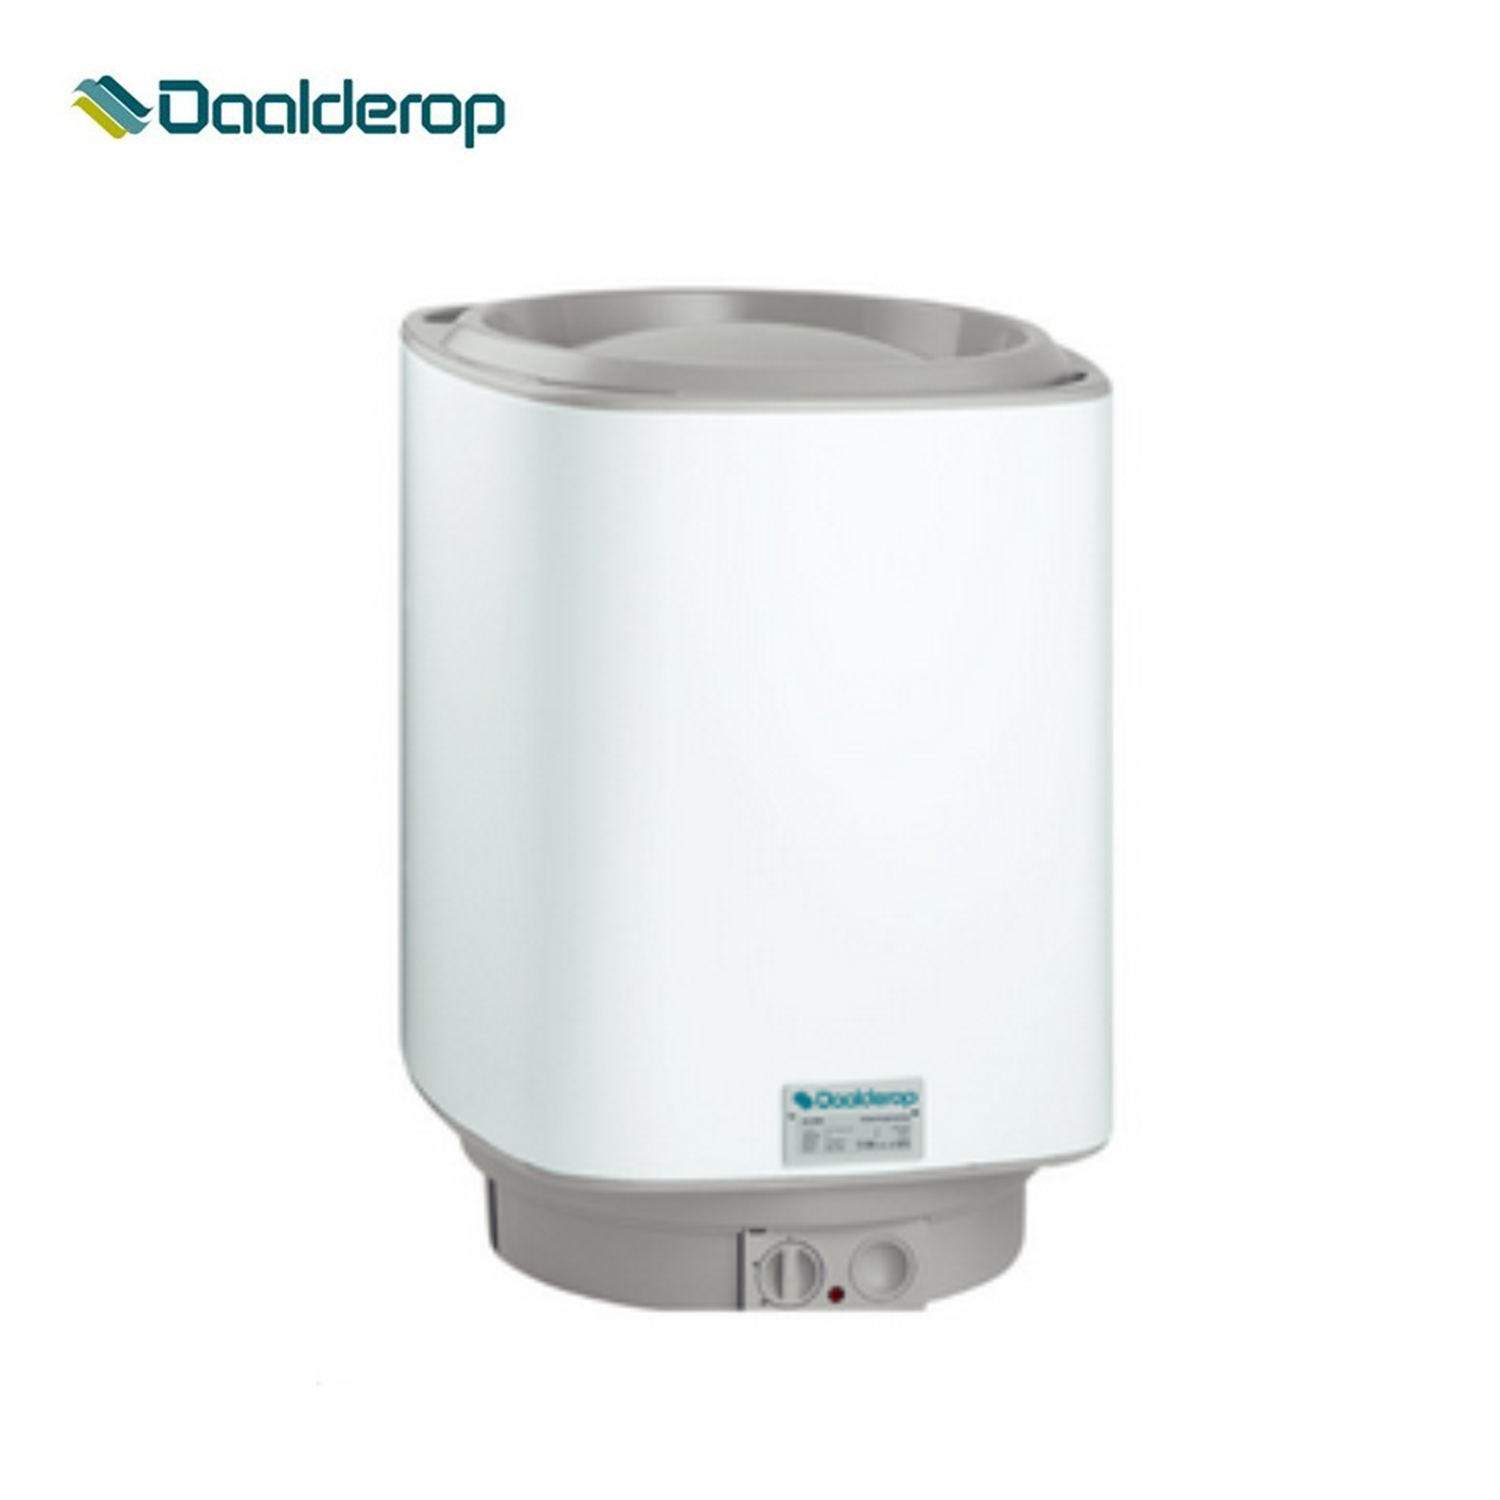 Daalderop Electric Water Heater 30L - Pemanas Air